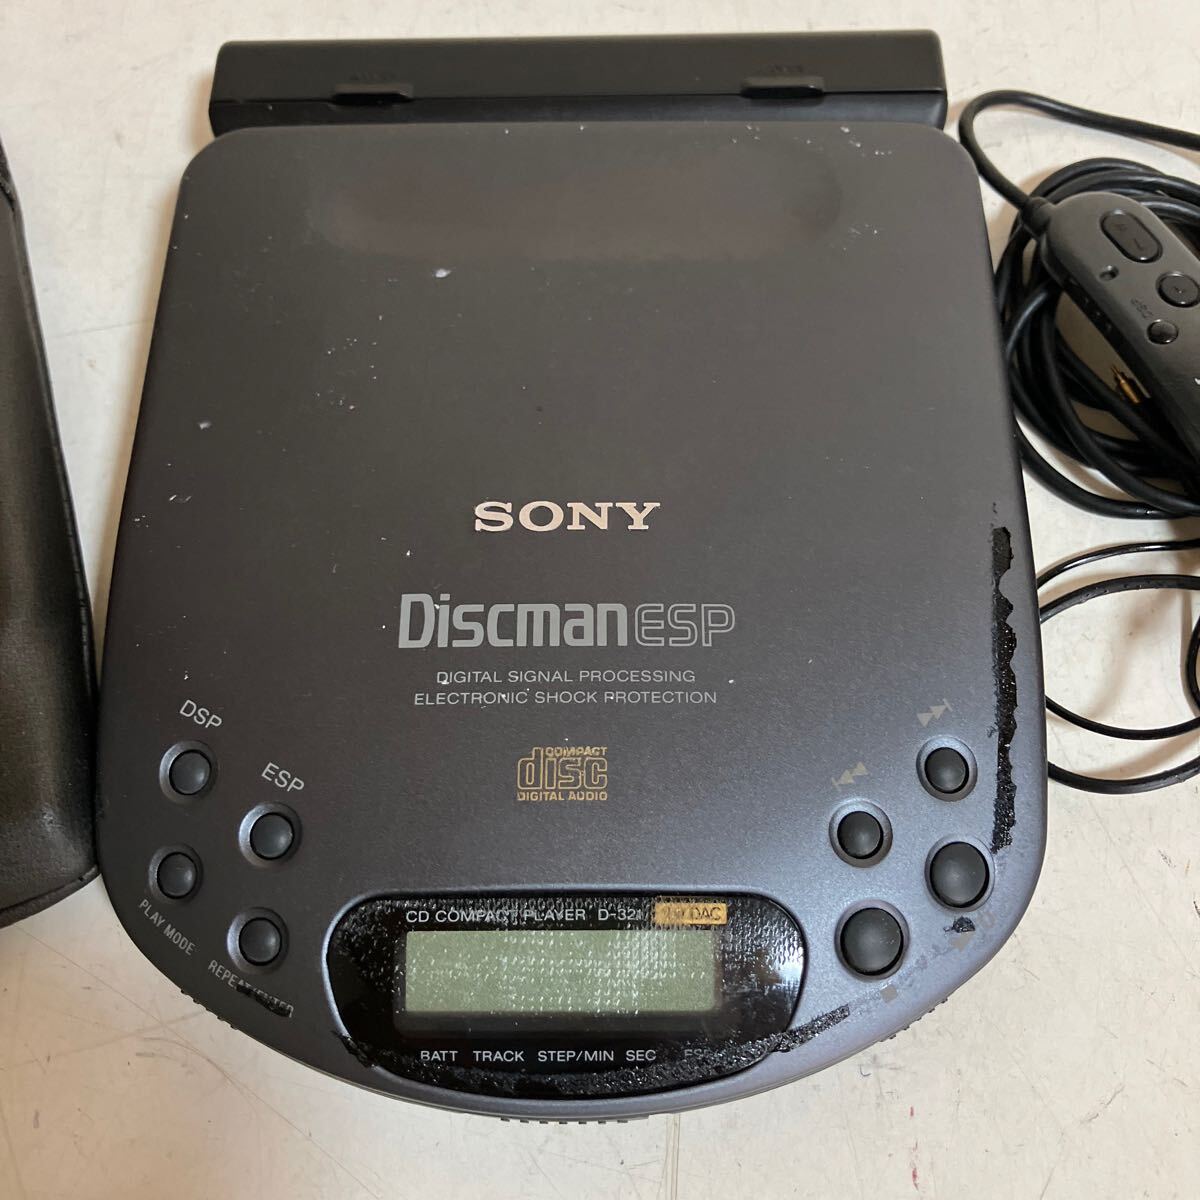 SONY Sony Discman портативный CD плеер D-321 диск man корпус б/у покрытие слуховай аппарат есть retro электризация только проверка settled совместно 